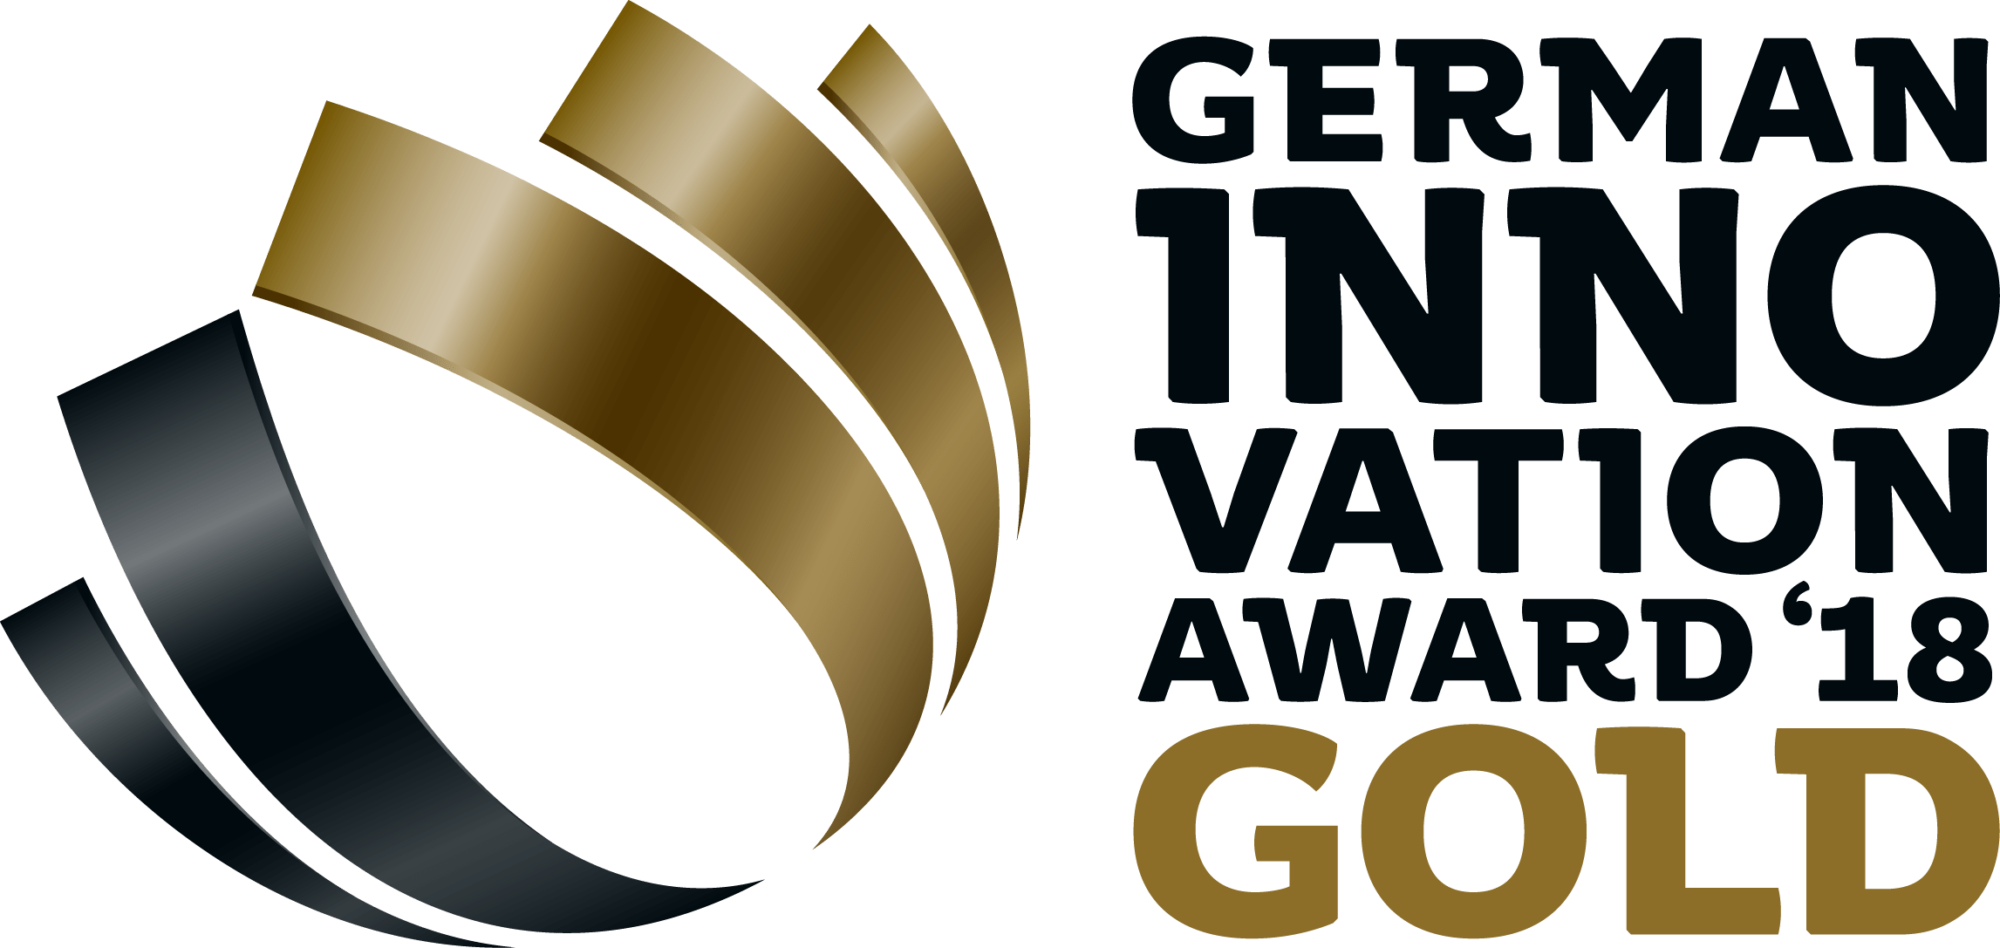 MARTIN German Innovation Award in Gold 2018